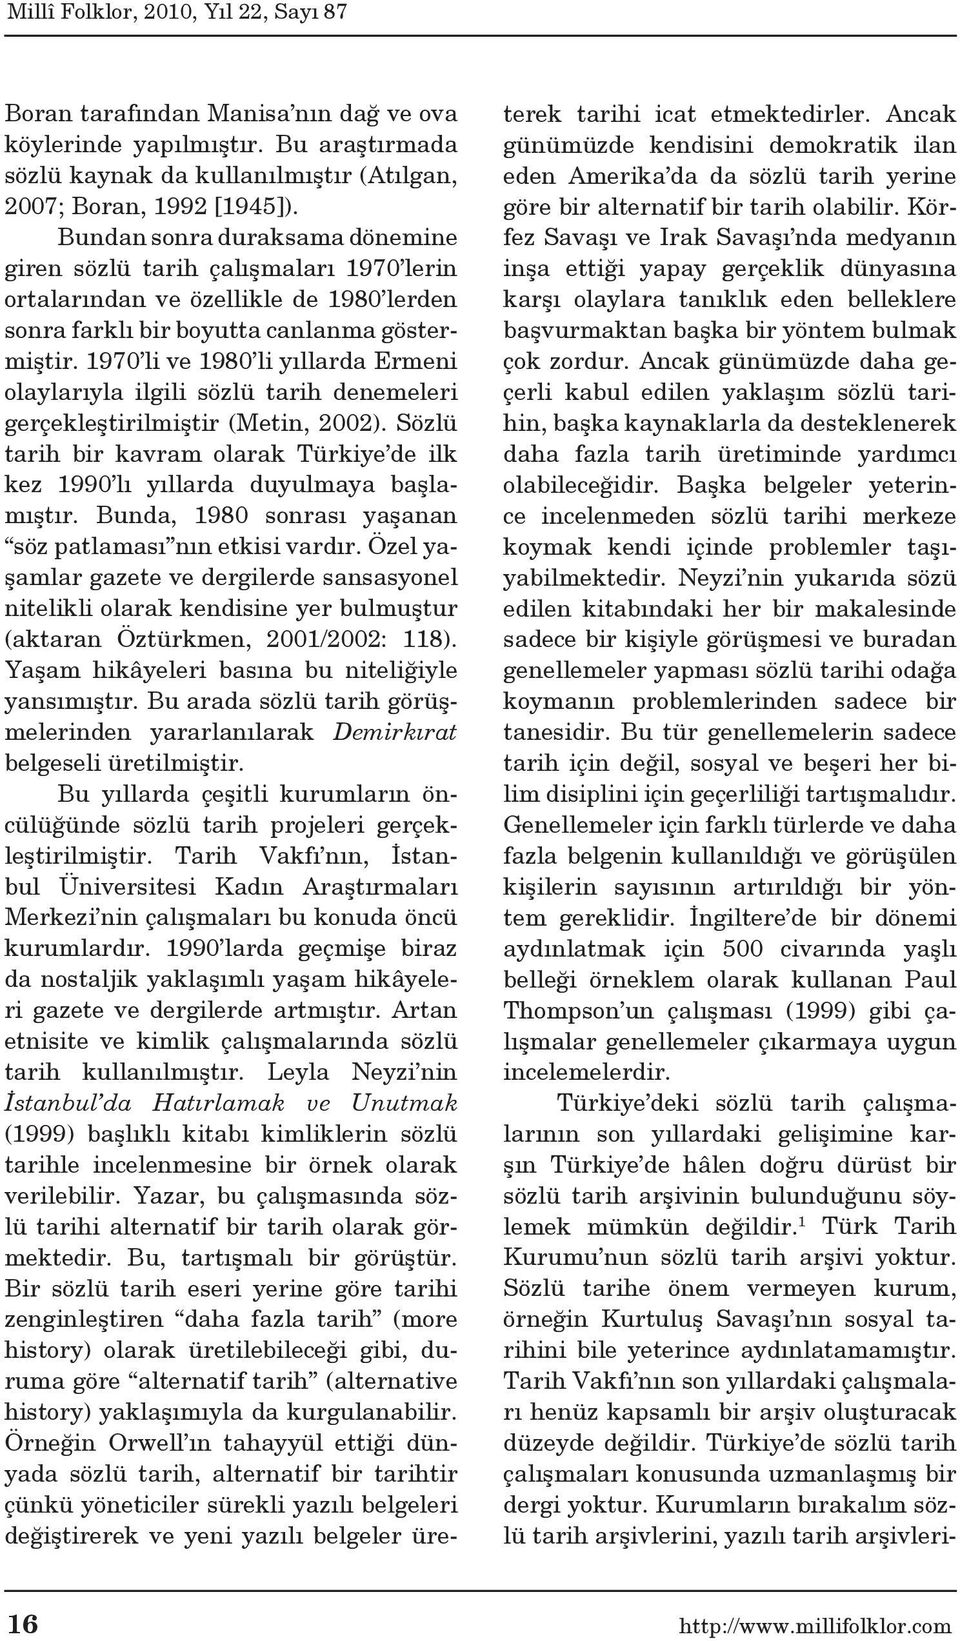 1970 li ve 1980 li yıllarda Ermeni olaylarıyla ilgili sözlü tarih denemeleri gerçekleştirilmiştir (Metin, 2002).